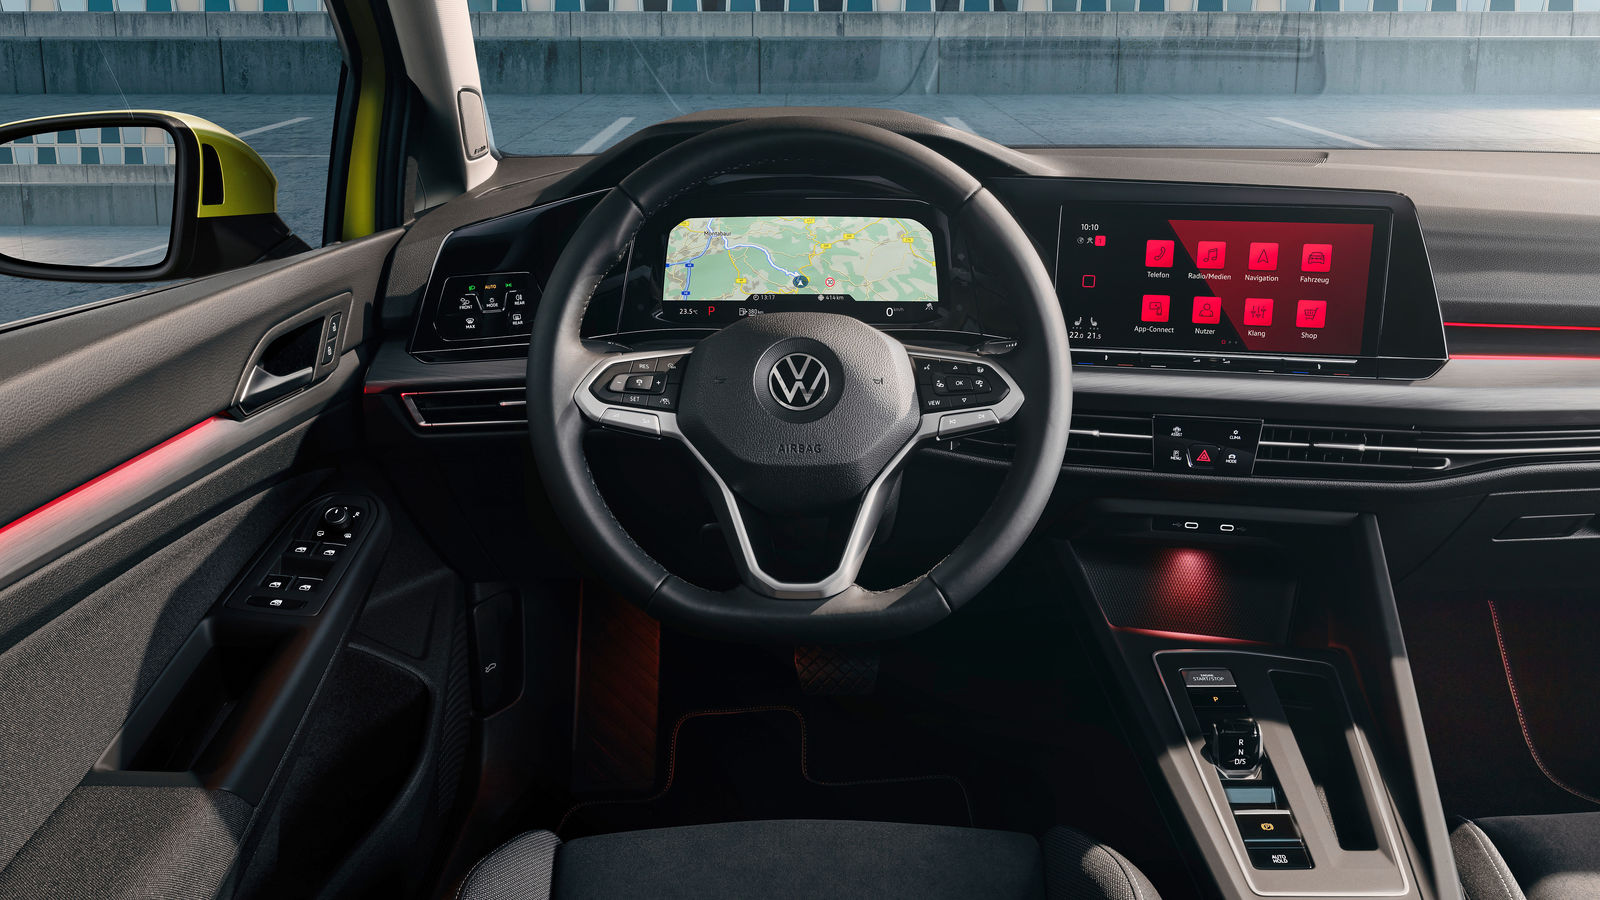 3ve-Blog - Generation digital: Der neue Volkswagen Golf 8